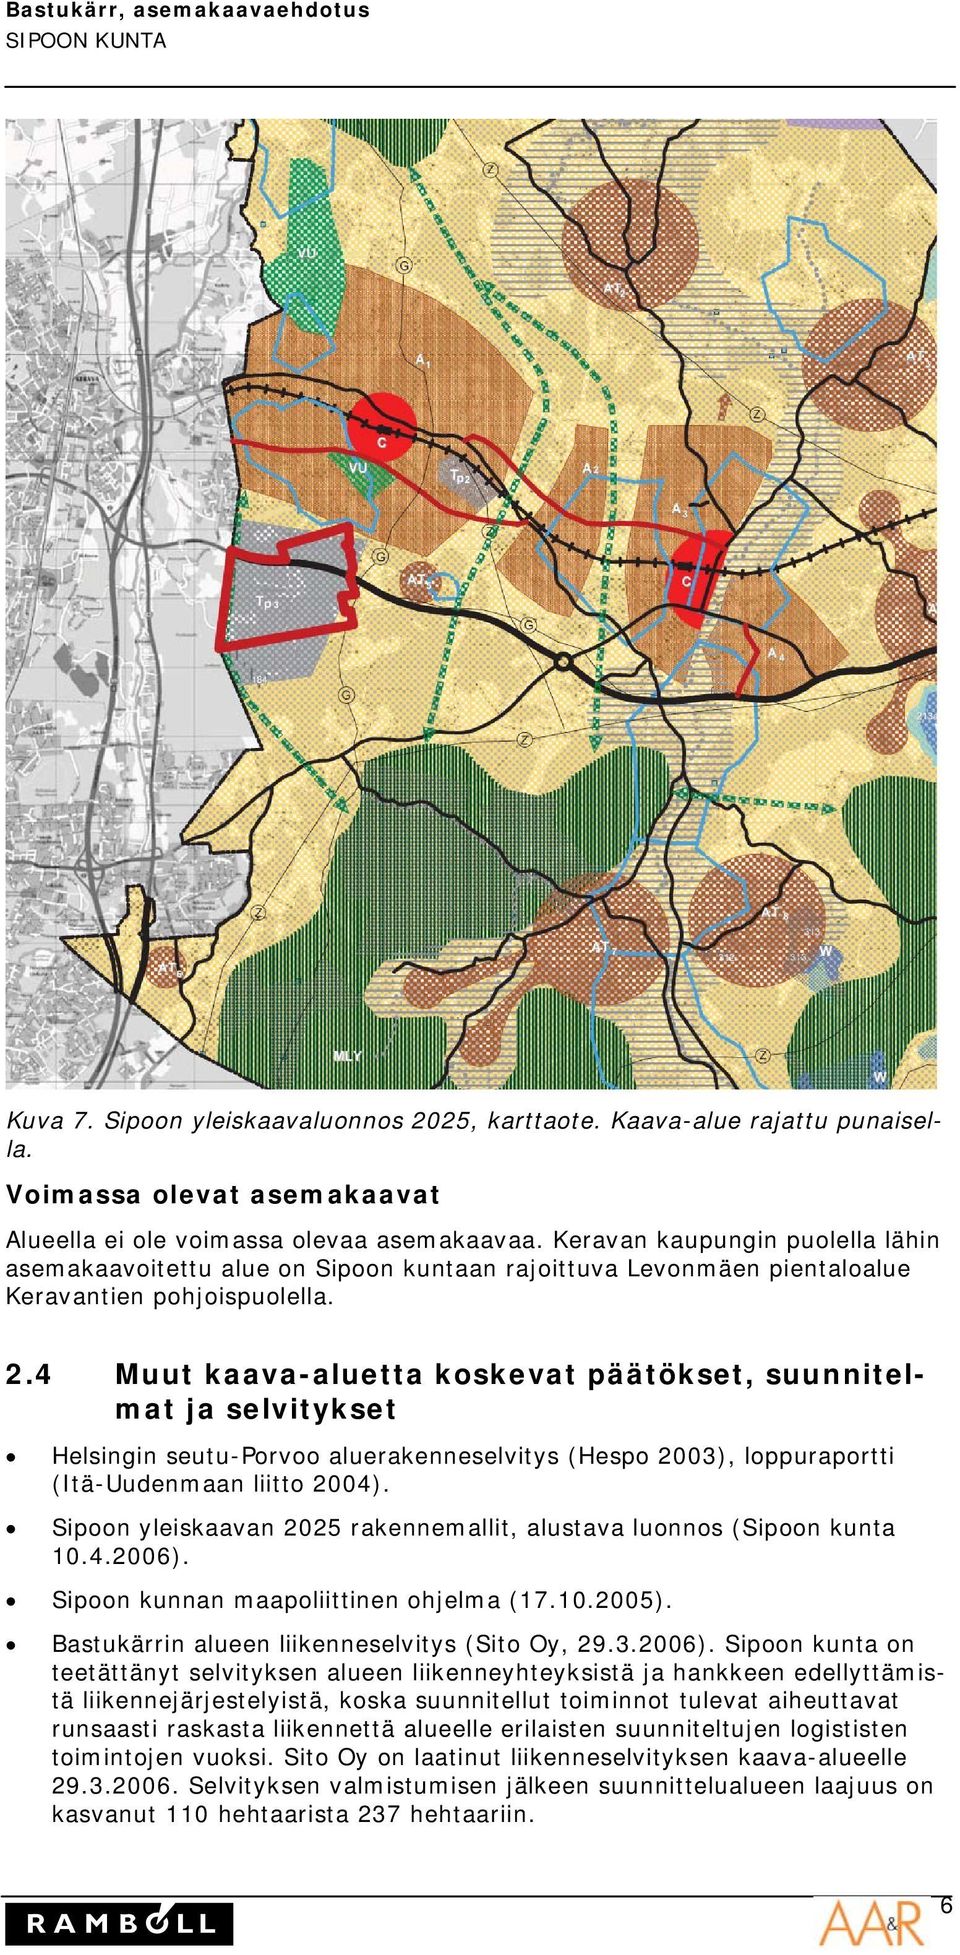 4 Muut kaava-aluetta koskevat päätökset, suunnitelmat ja selvitykset Helsingin seutu-porvoo aluerakenneselvitys (Hespo 2003), loppuraportti (Itä-Uudenmaan liitto 2004).